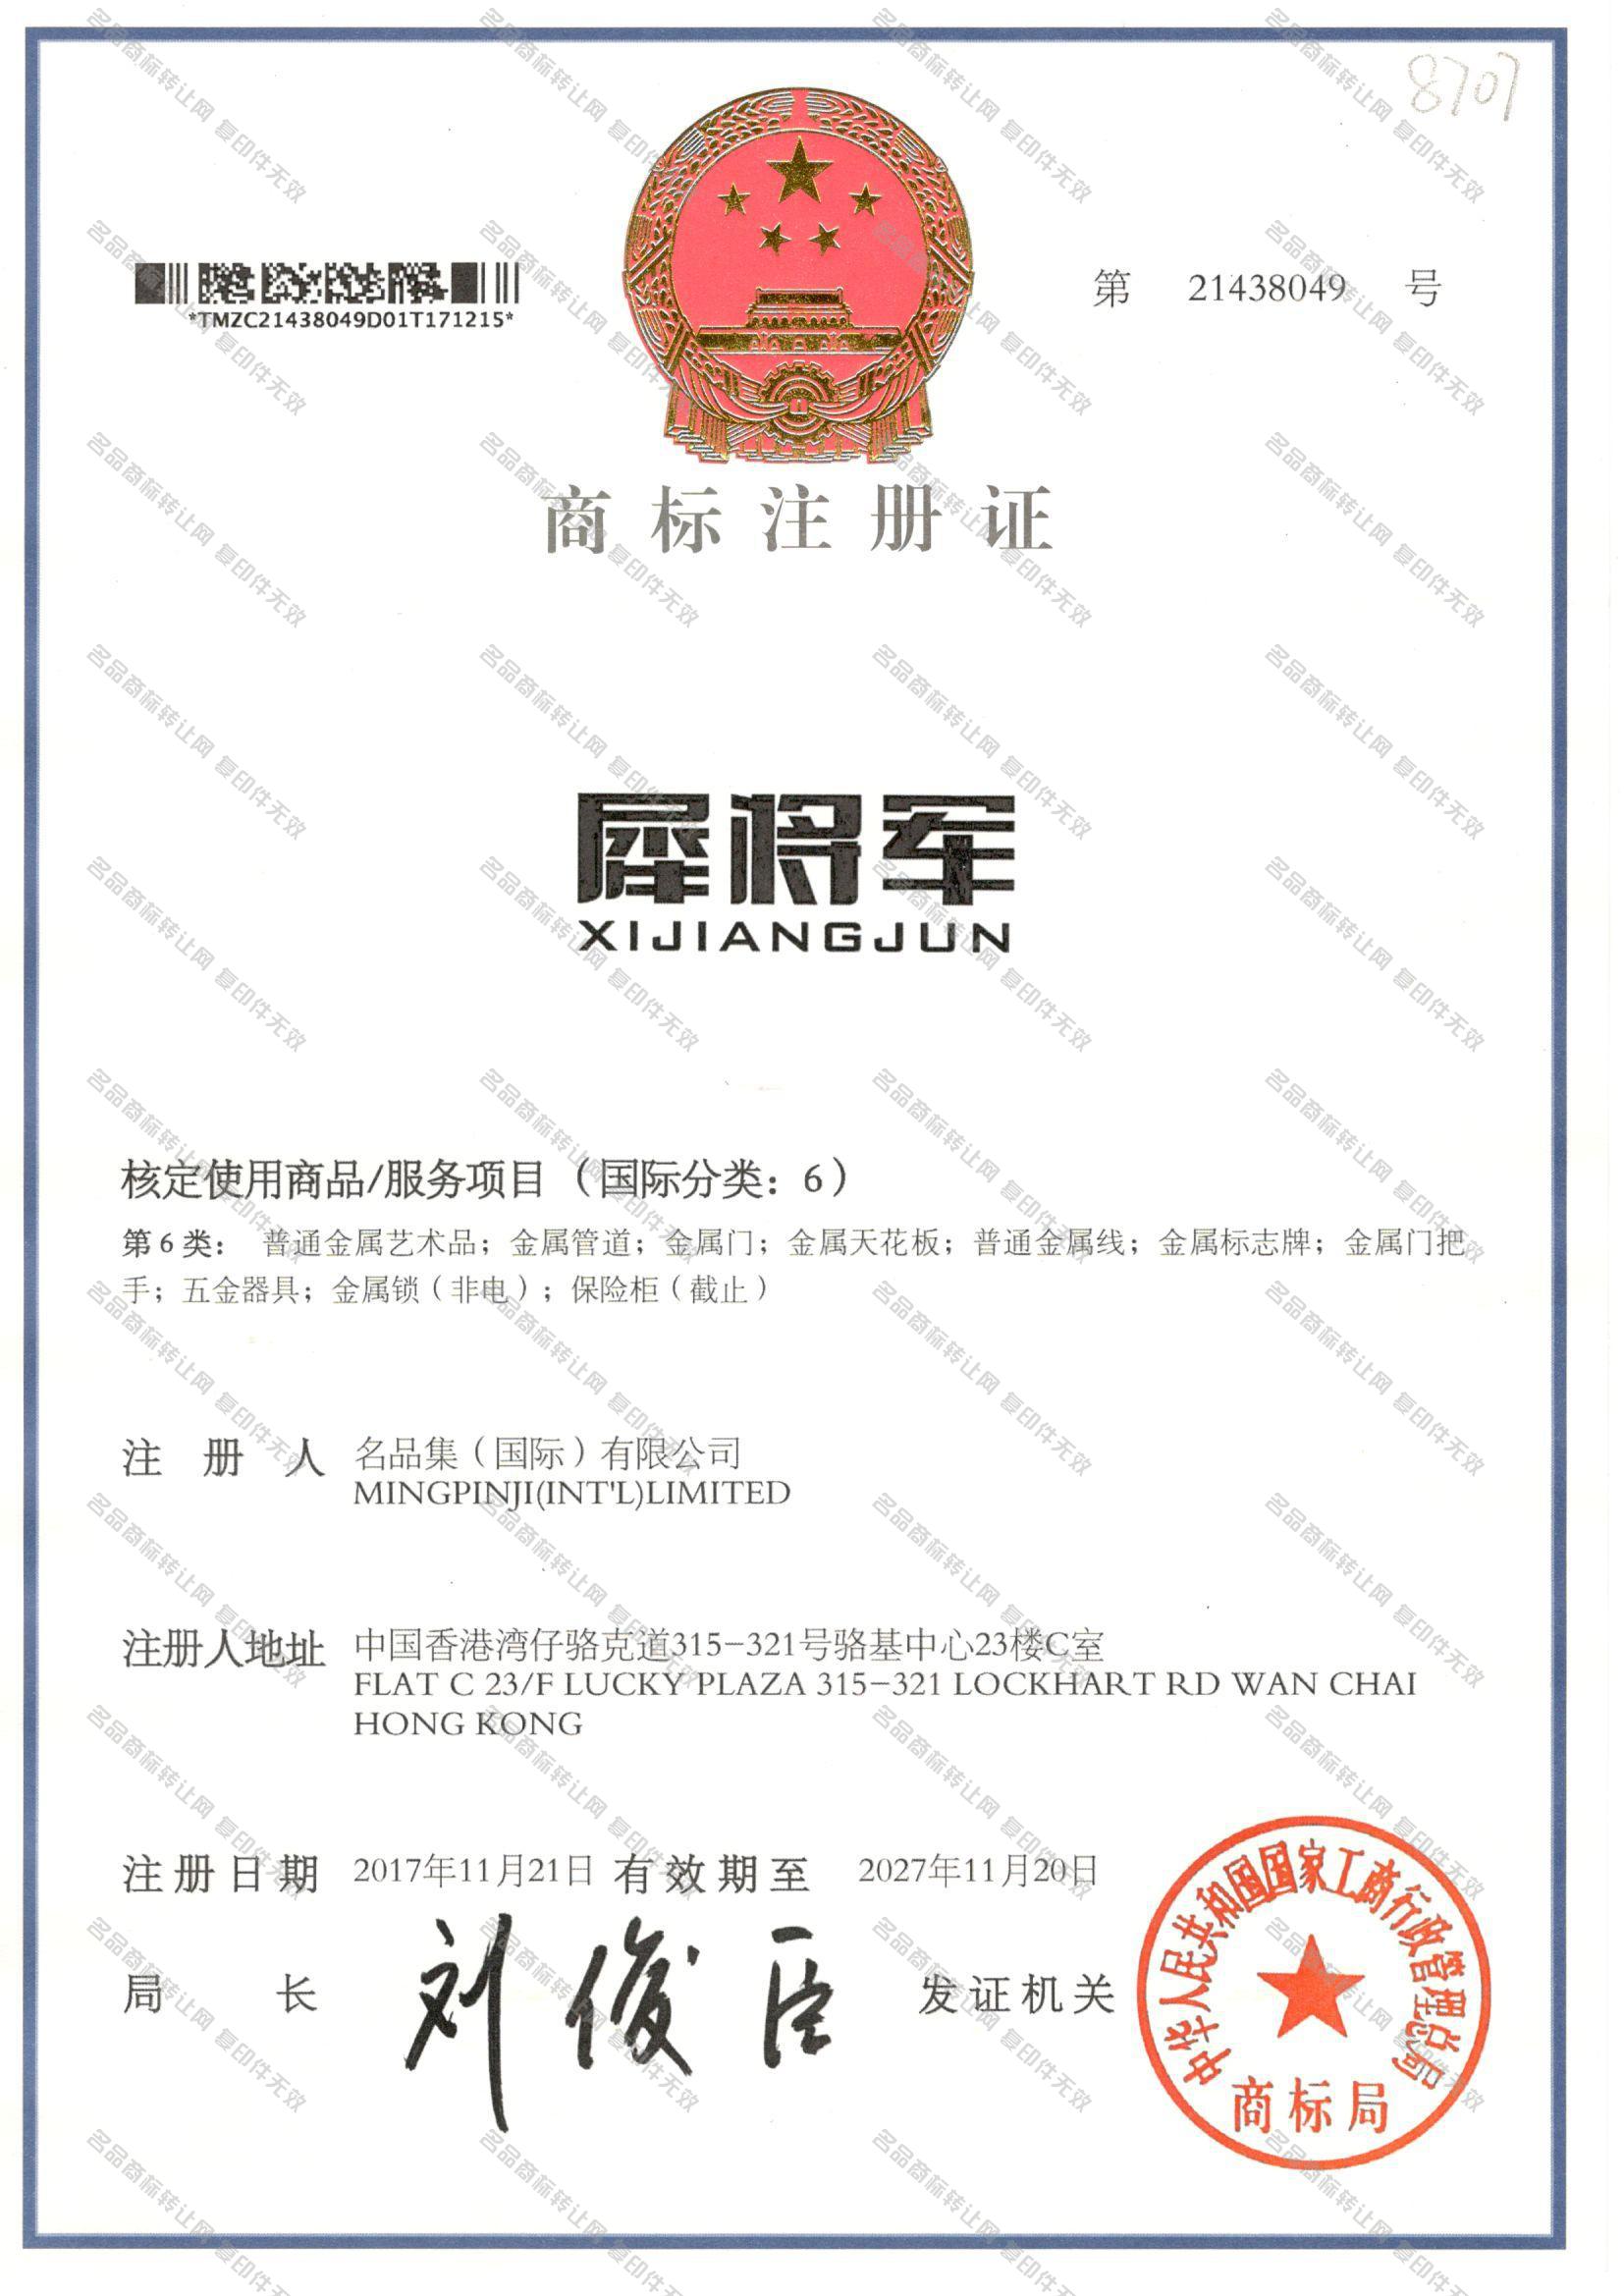 犀将军 XIJIANGJUN注册证